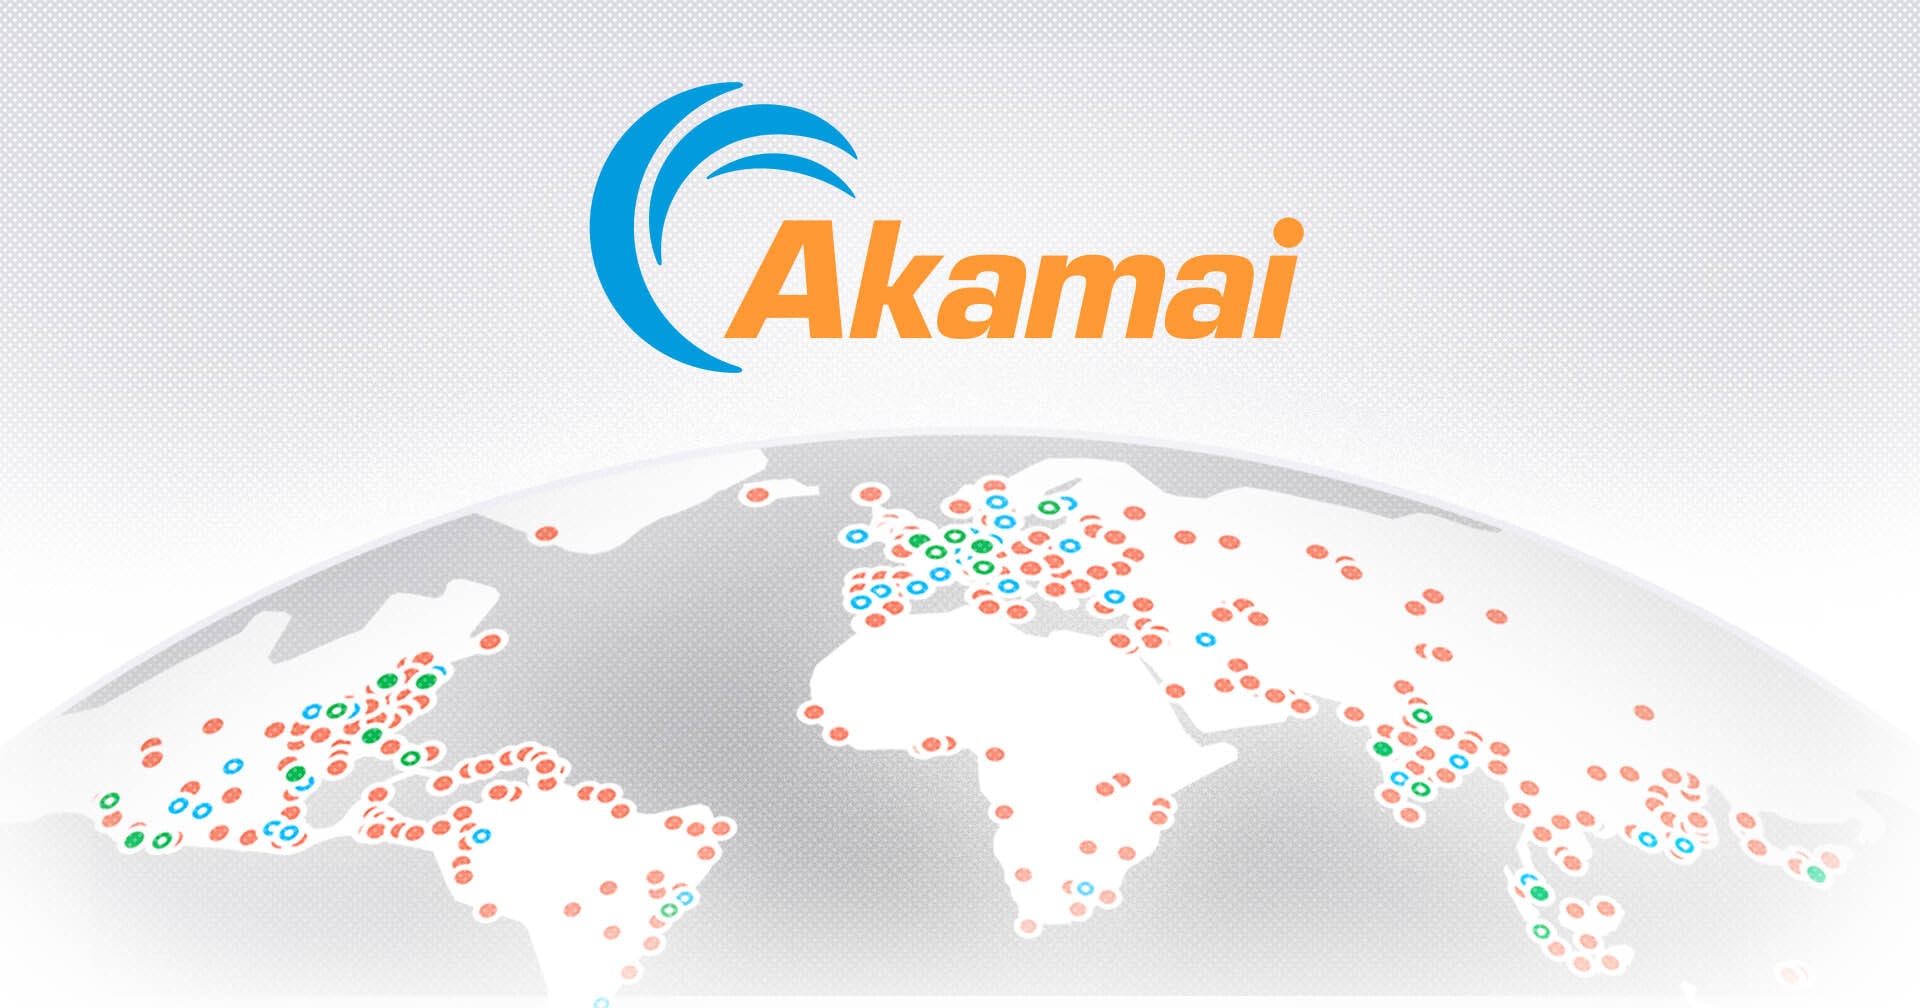 Akamai Cloud Computing Services Atualização de preços Cabeçalho do Blog